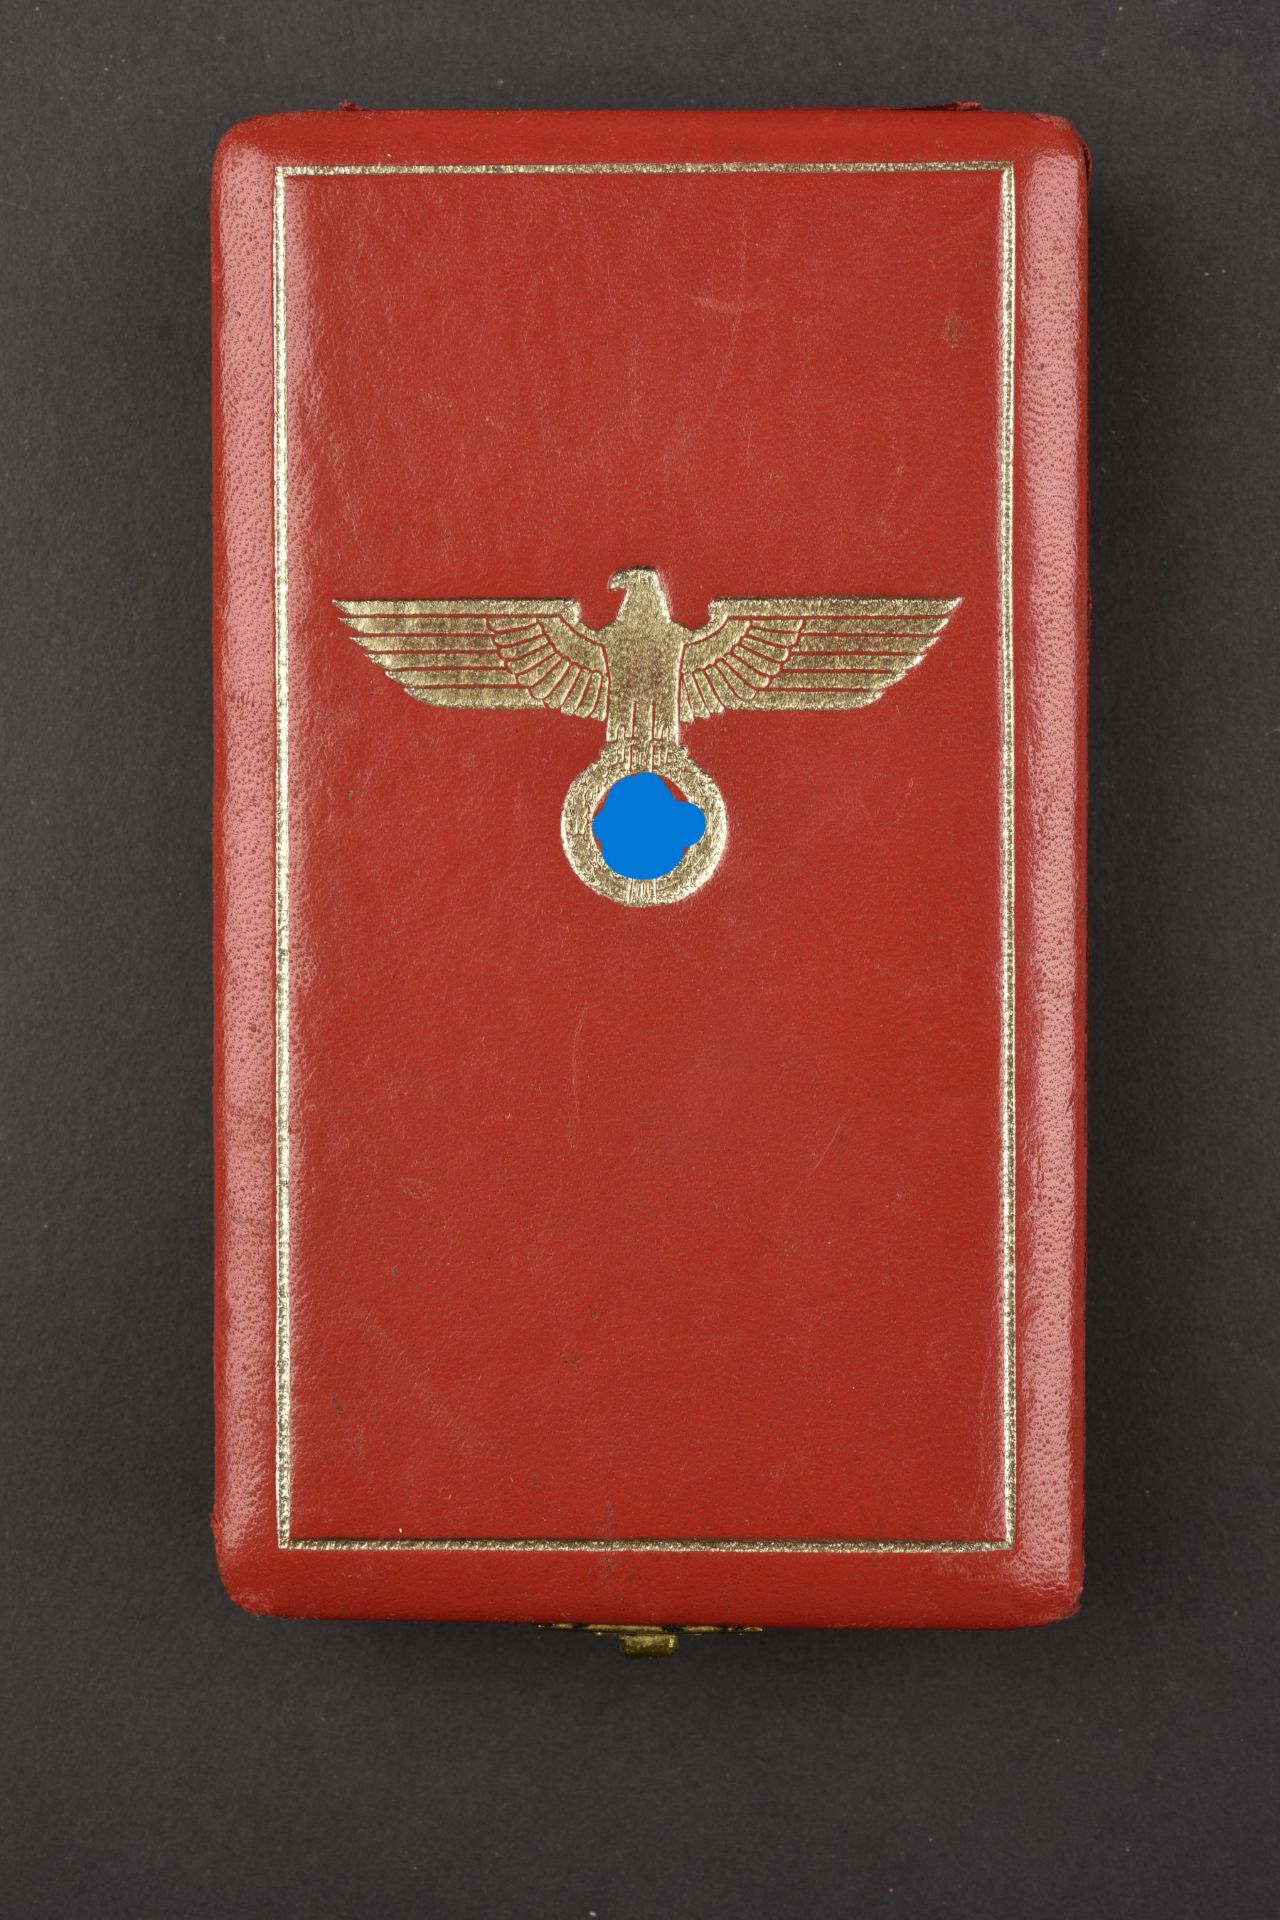 Medaille Deutsche Adler. Deutsche Adler medals. - Image 6 of 8